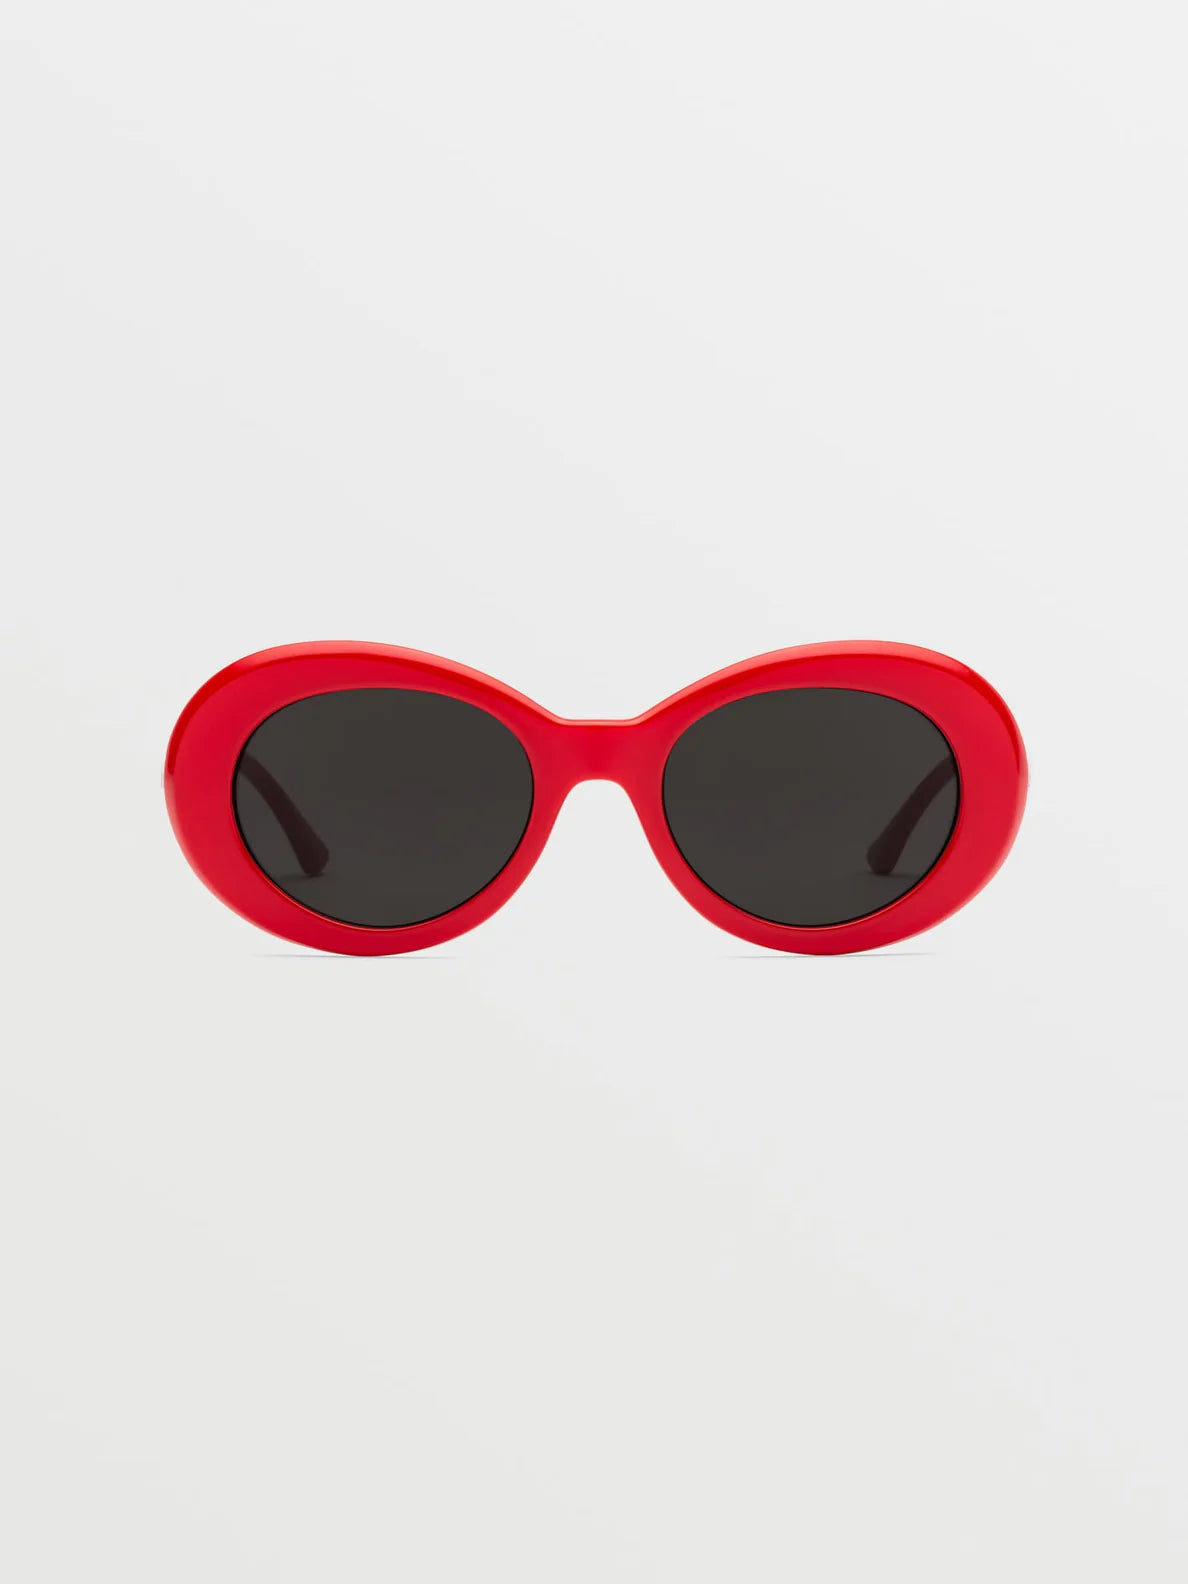 Volcom Stoned Gloss Red/Gray | Gafas de sol | Volcom Shop | surfdevils.com